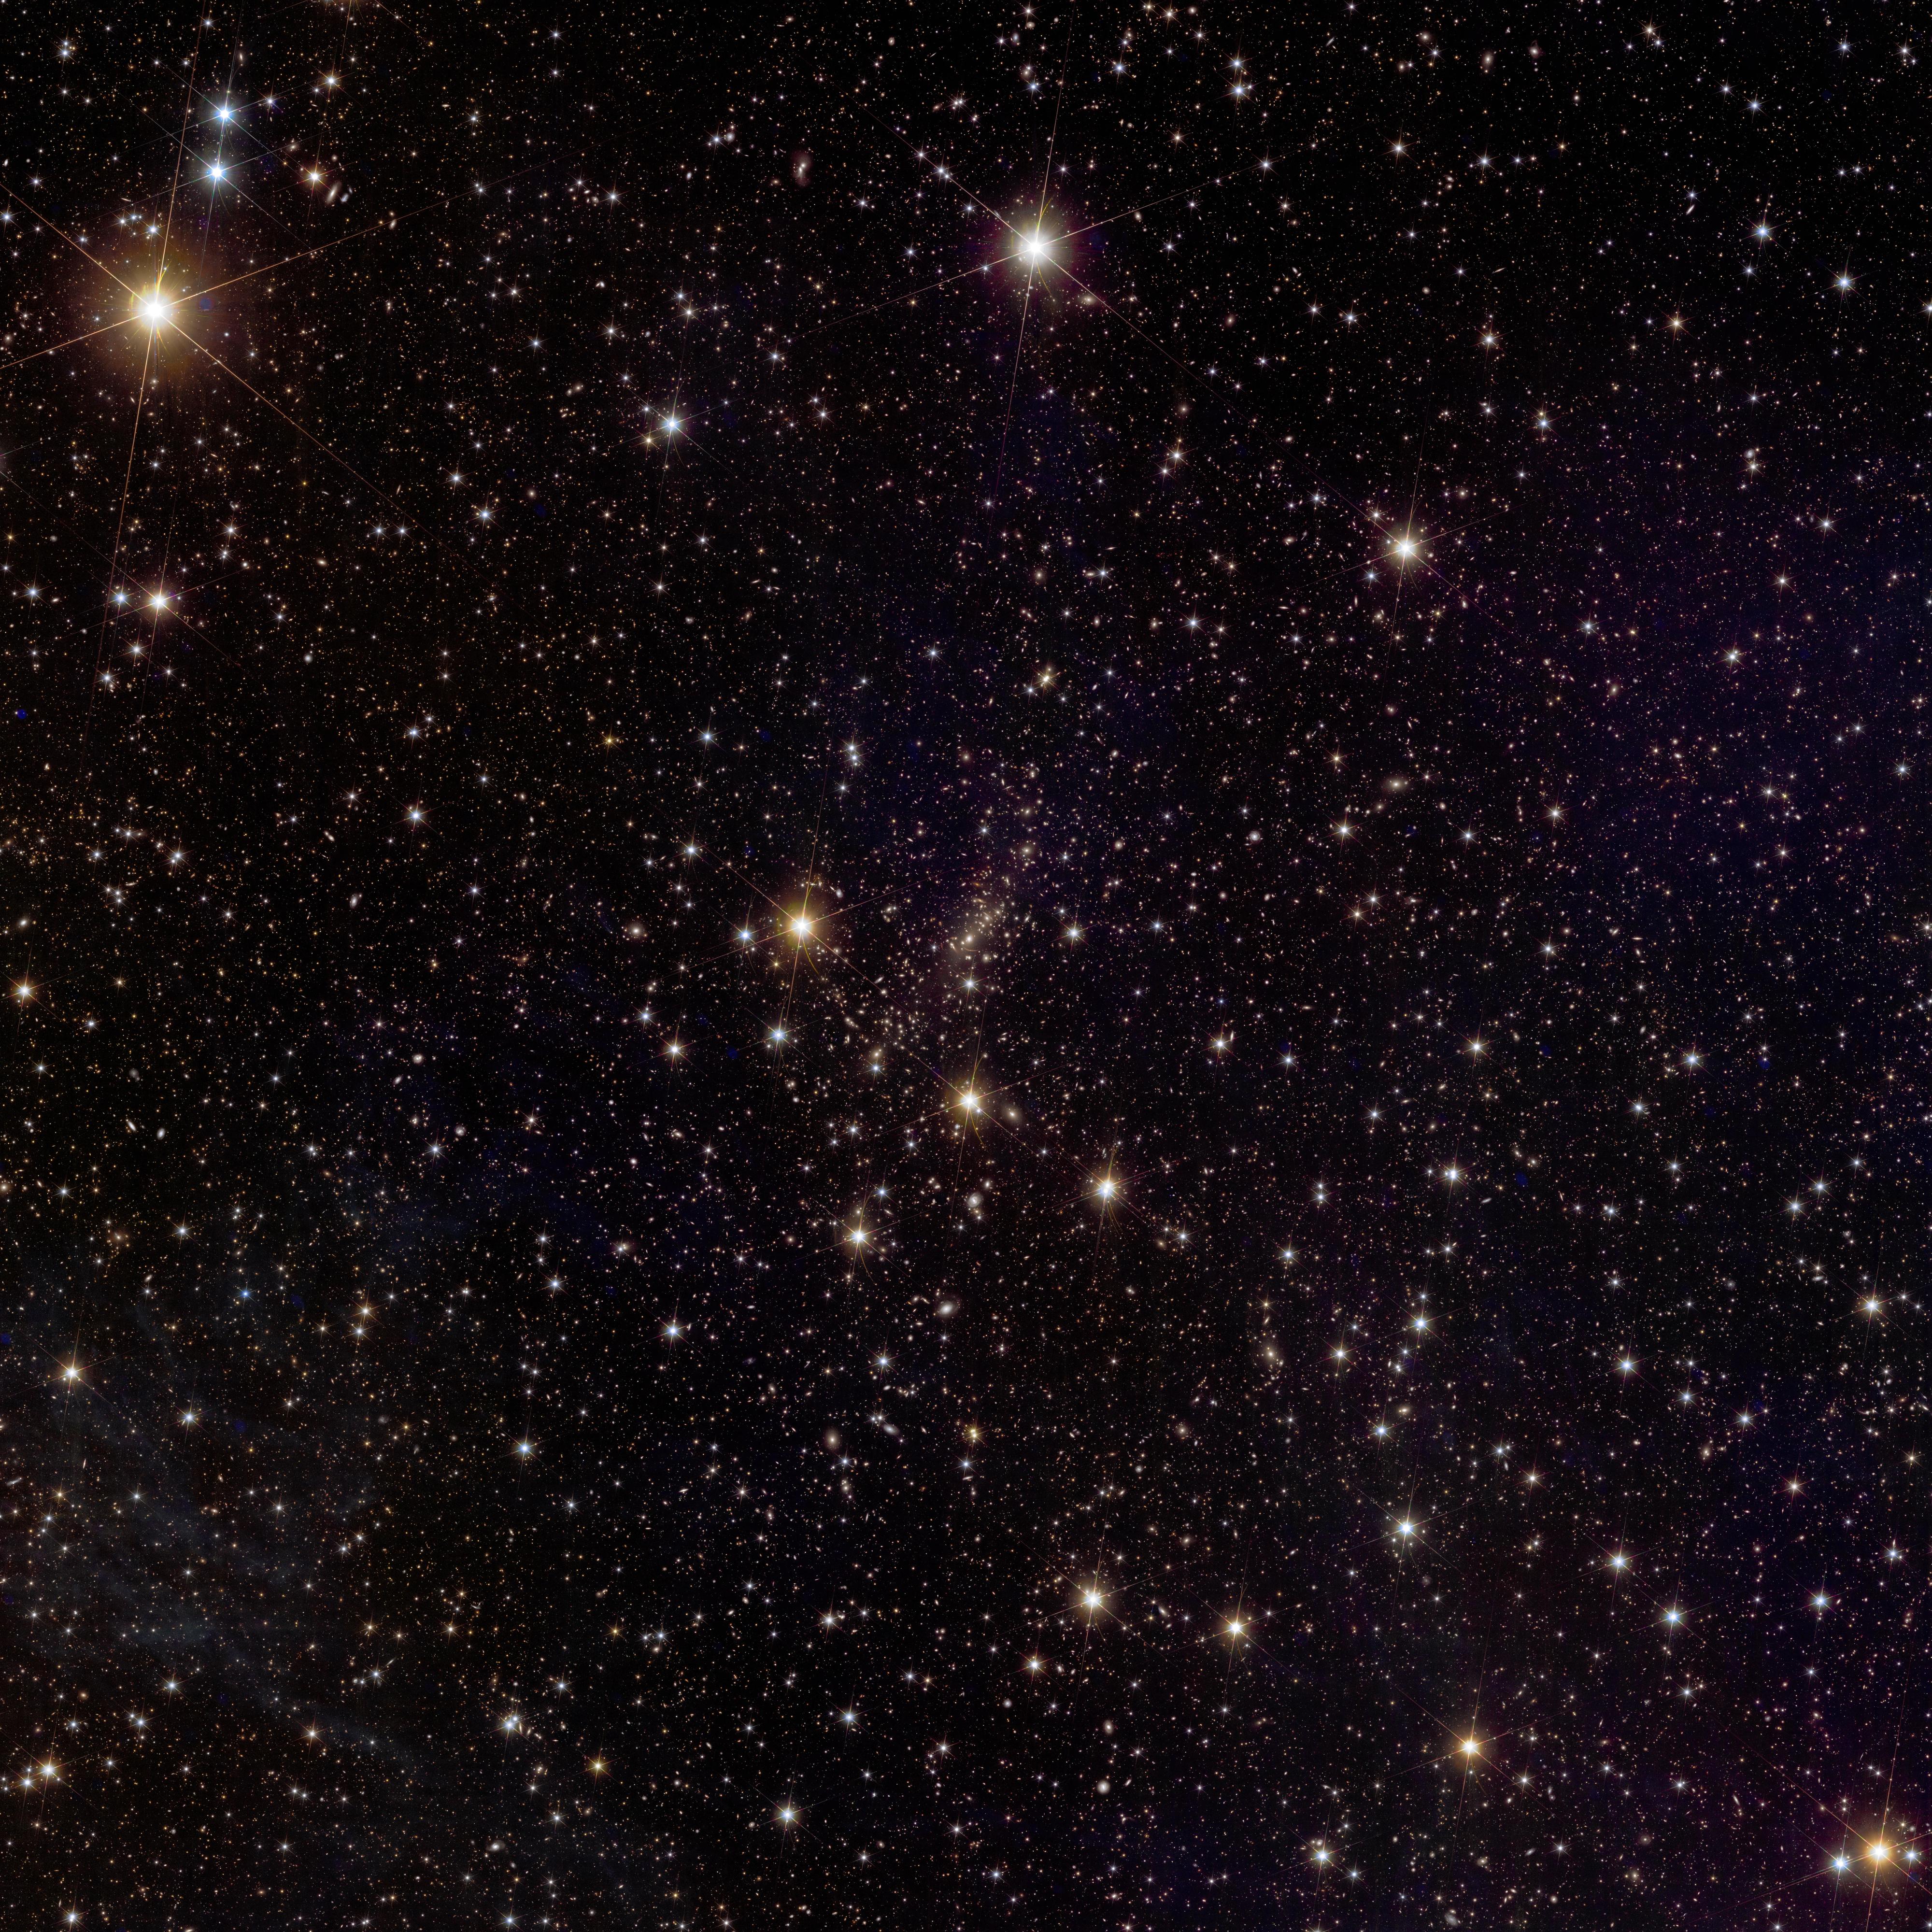 Abell 2390 se trouve à 2,7 milliards d'années-lumière dans la constellation de Pégase. Cet amas est un conglomérat géant de nombreuses galaxies similaires à la Voie lactée. On voit ici la lumière qui pénètre l'amas à partir d'étoiles qui ont été arrachées à leurs galaxies mères et se trouvent dans l'espace intergalactique. Observer cette "lumière intra-amas" est une spécialité d'Euclid: ces orphelins stellaires pourraient permettre aux astronomes de distinguer où se trouve la matière sombre. [ESA/Euclid/Euclid Consortium/NASA - image processing by J.-C. Cuillandre (CEA Paris-Saclay), G. Anselmi; CC BY-SA 3.0 IGO]